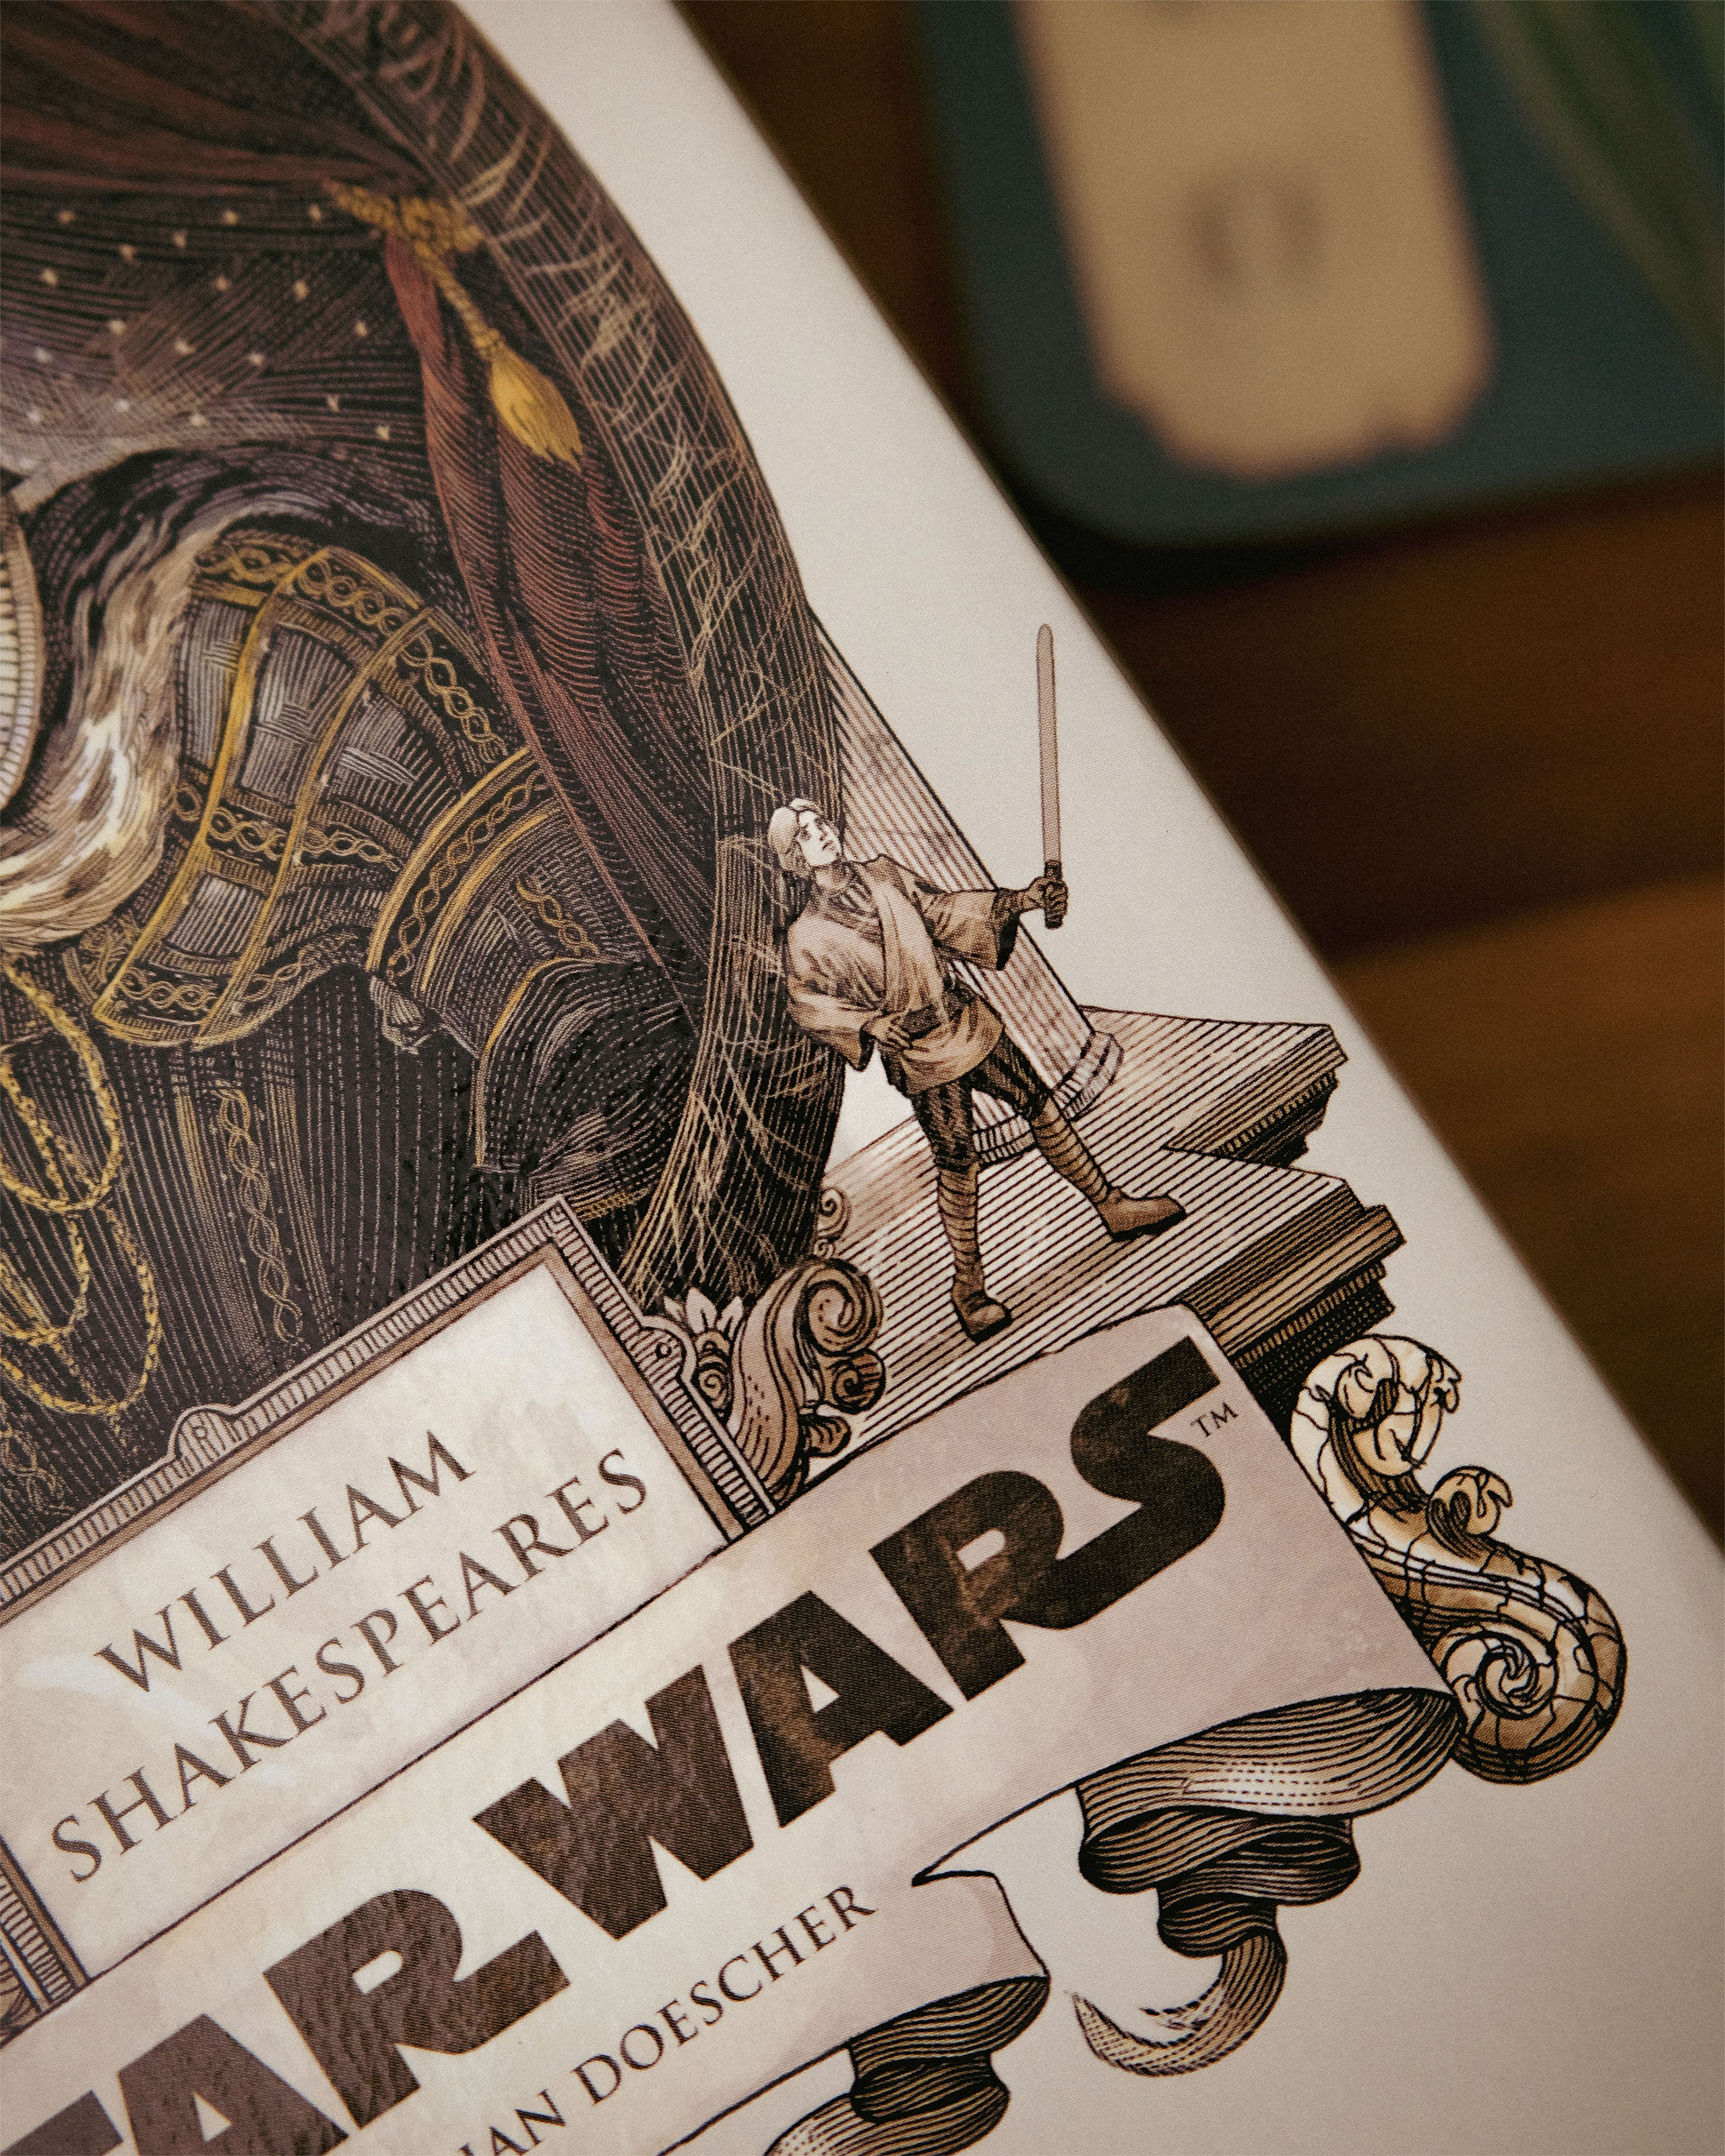 William Shakespeare's Star Wars - Voorwaar, Een Nieuwe Hoop